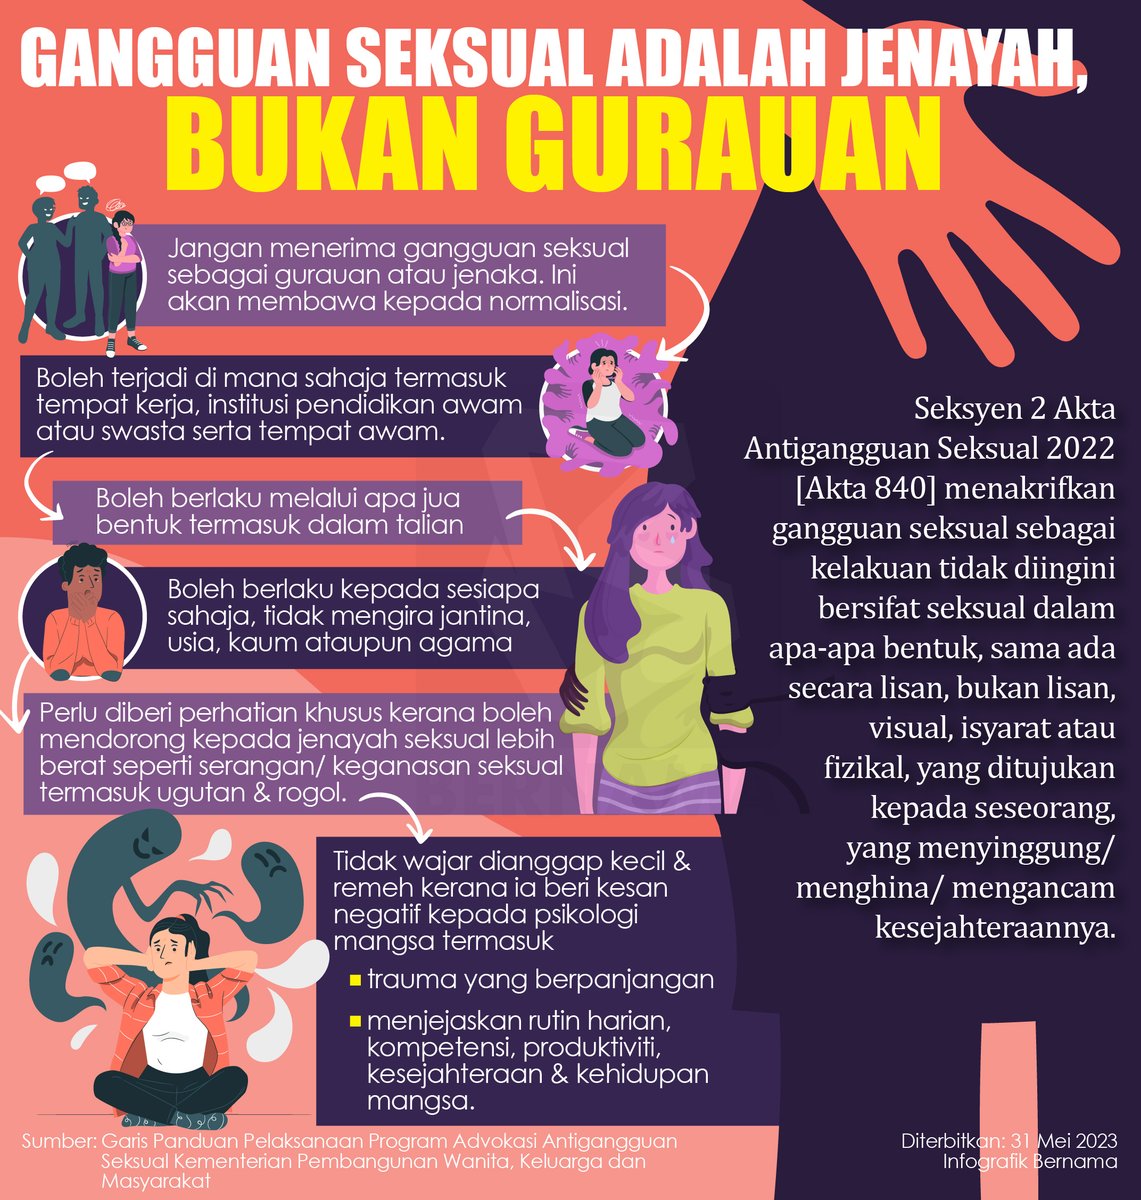 ‼️ Gangguan seksual adalah jenayah, bukan gurauan !

#InfografikBernama
#gangguanseksual 
@KPWKM